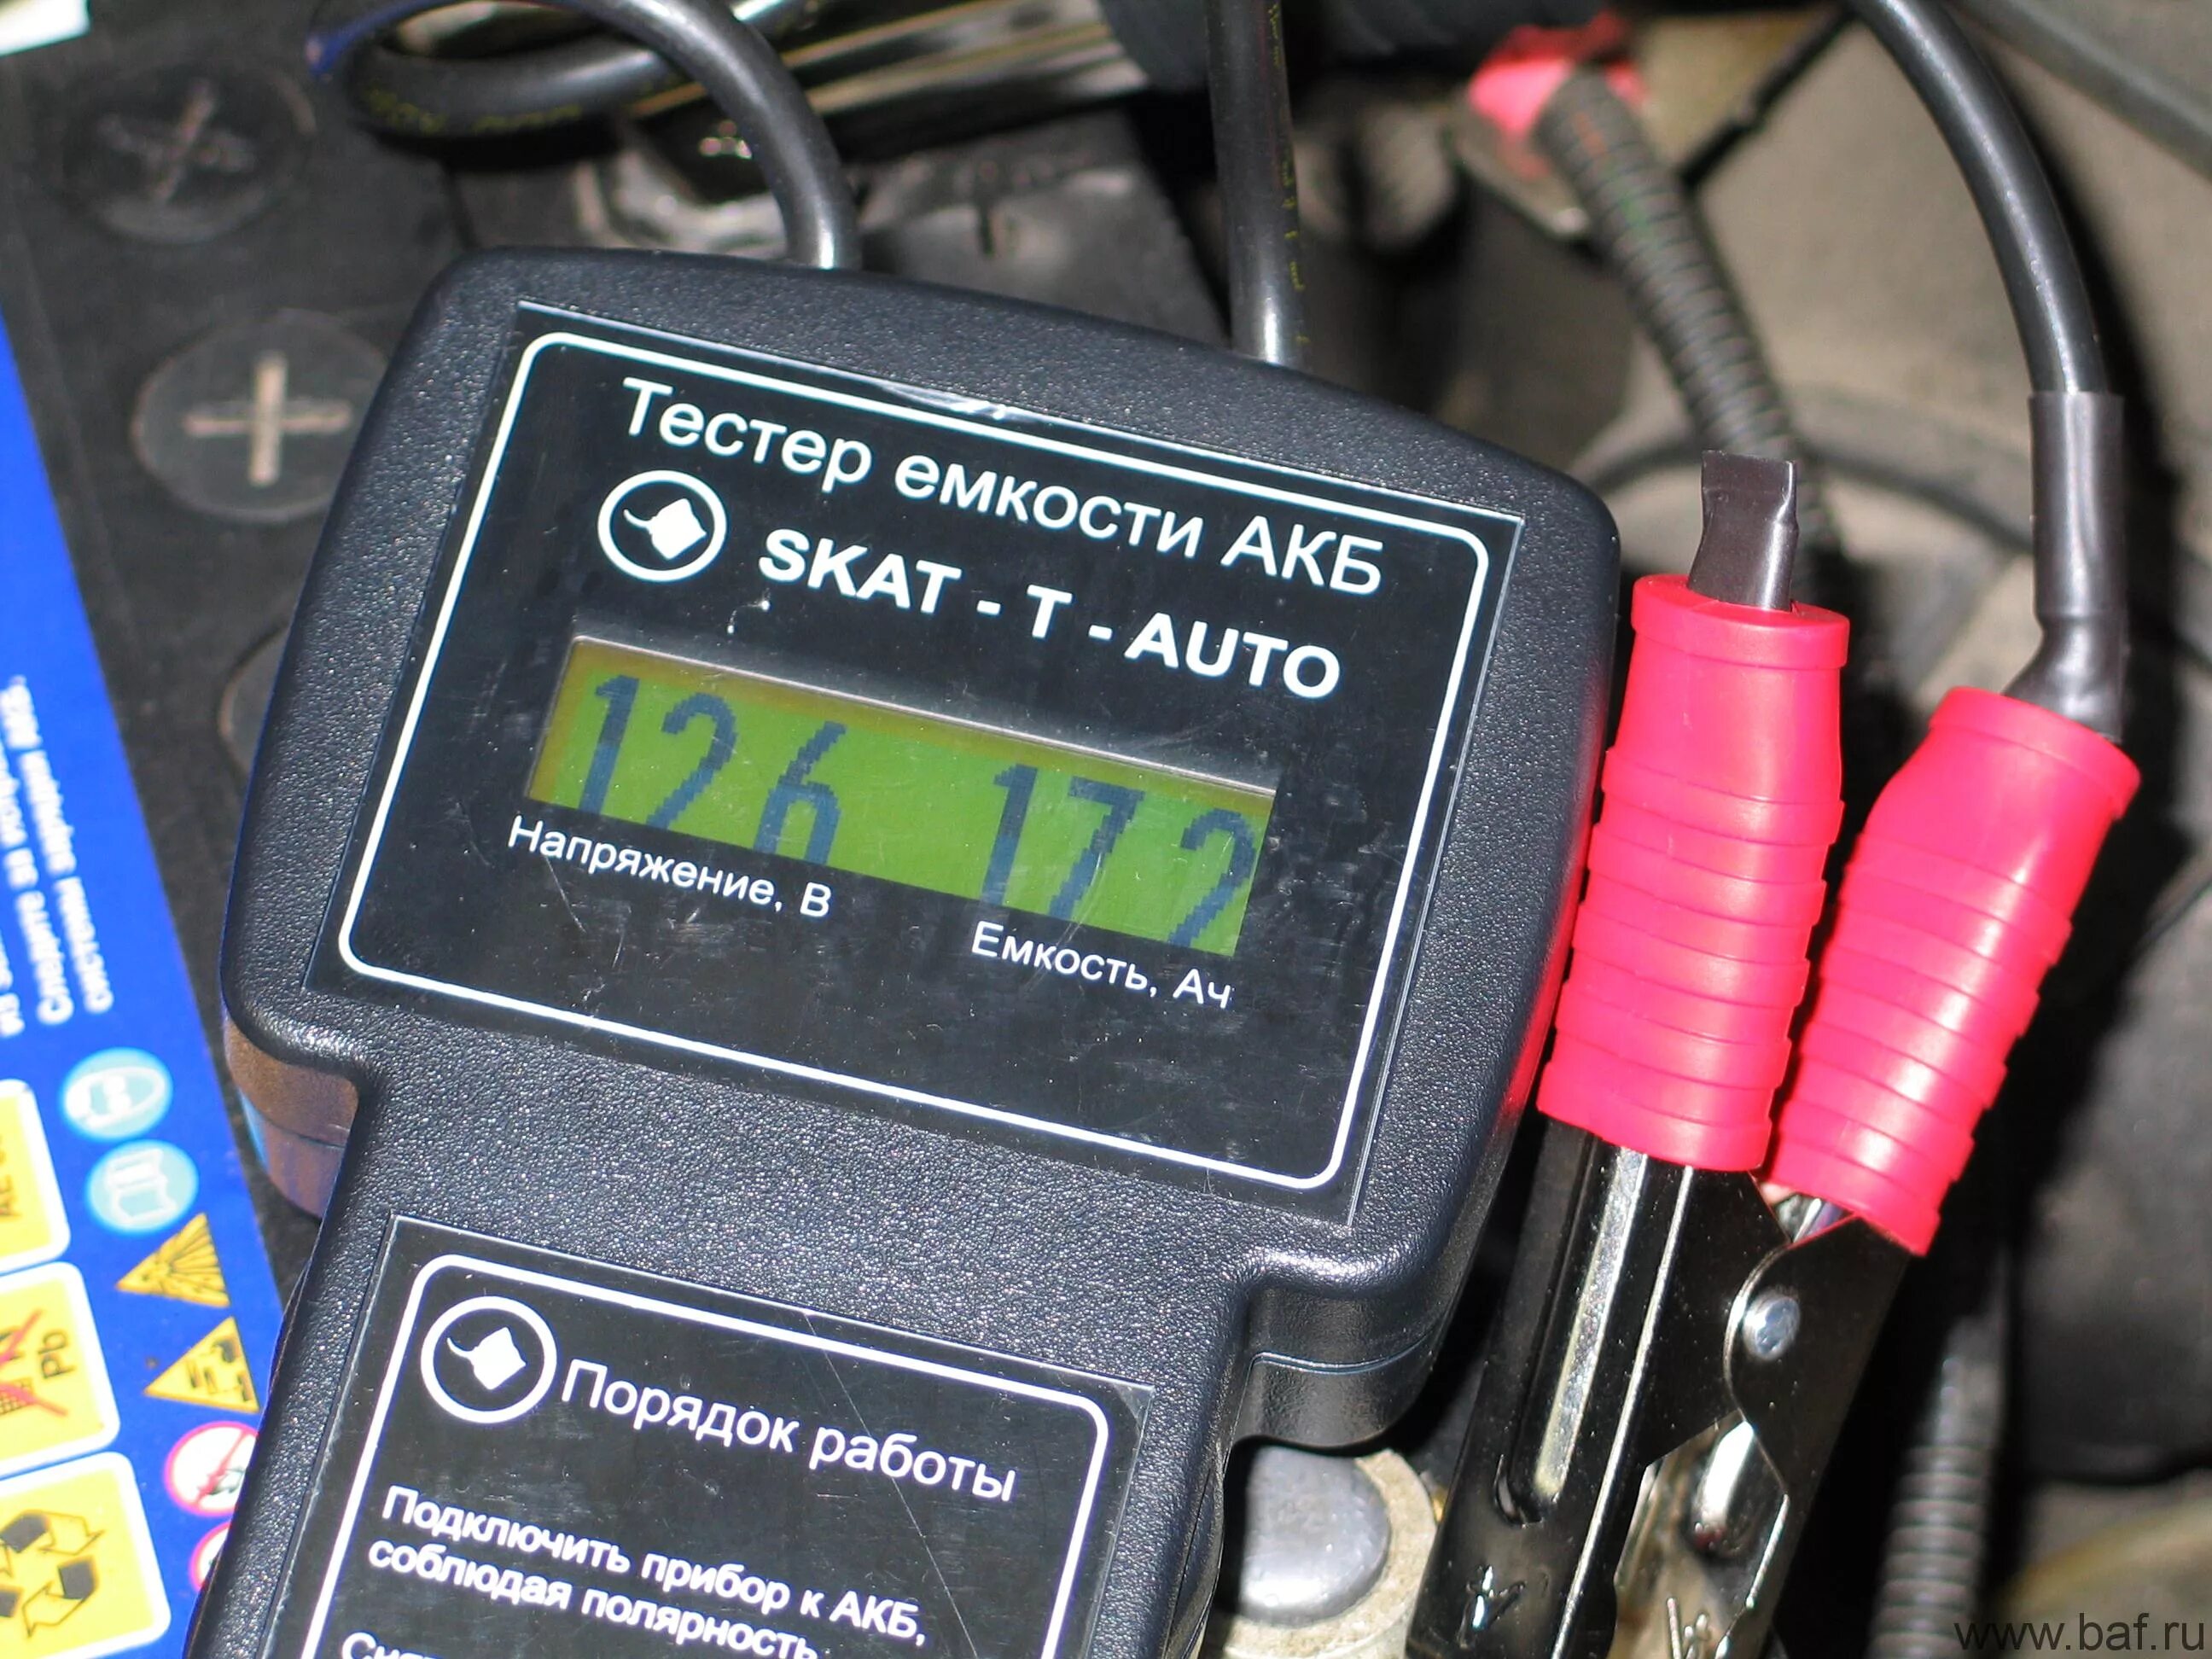 Выбрать емкость аккумулятора. Тестер ёмкости АКБ Skat-t-auto. Тестер емкости аккумулятора Skat t. Мультиметр для проверки ёмкости АКБ автомобиля 12в. Тестер емкости аккумулятора "Калибр".